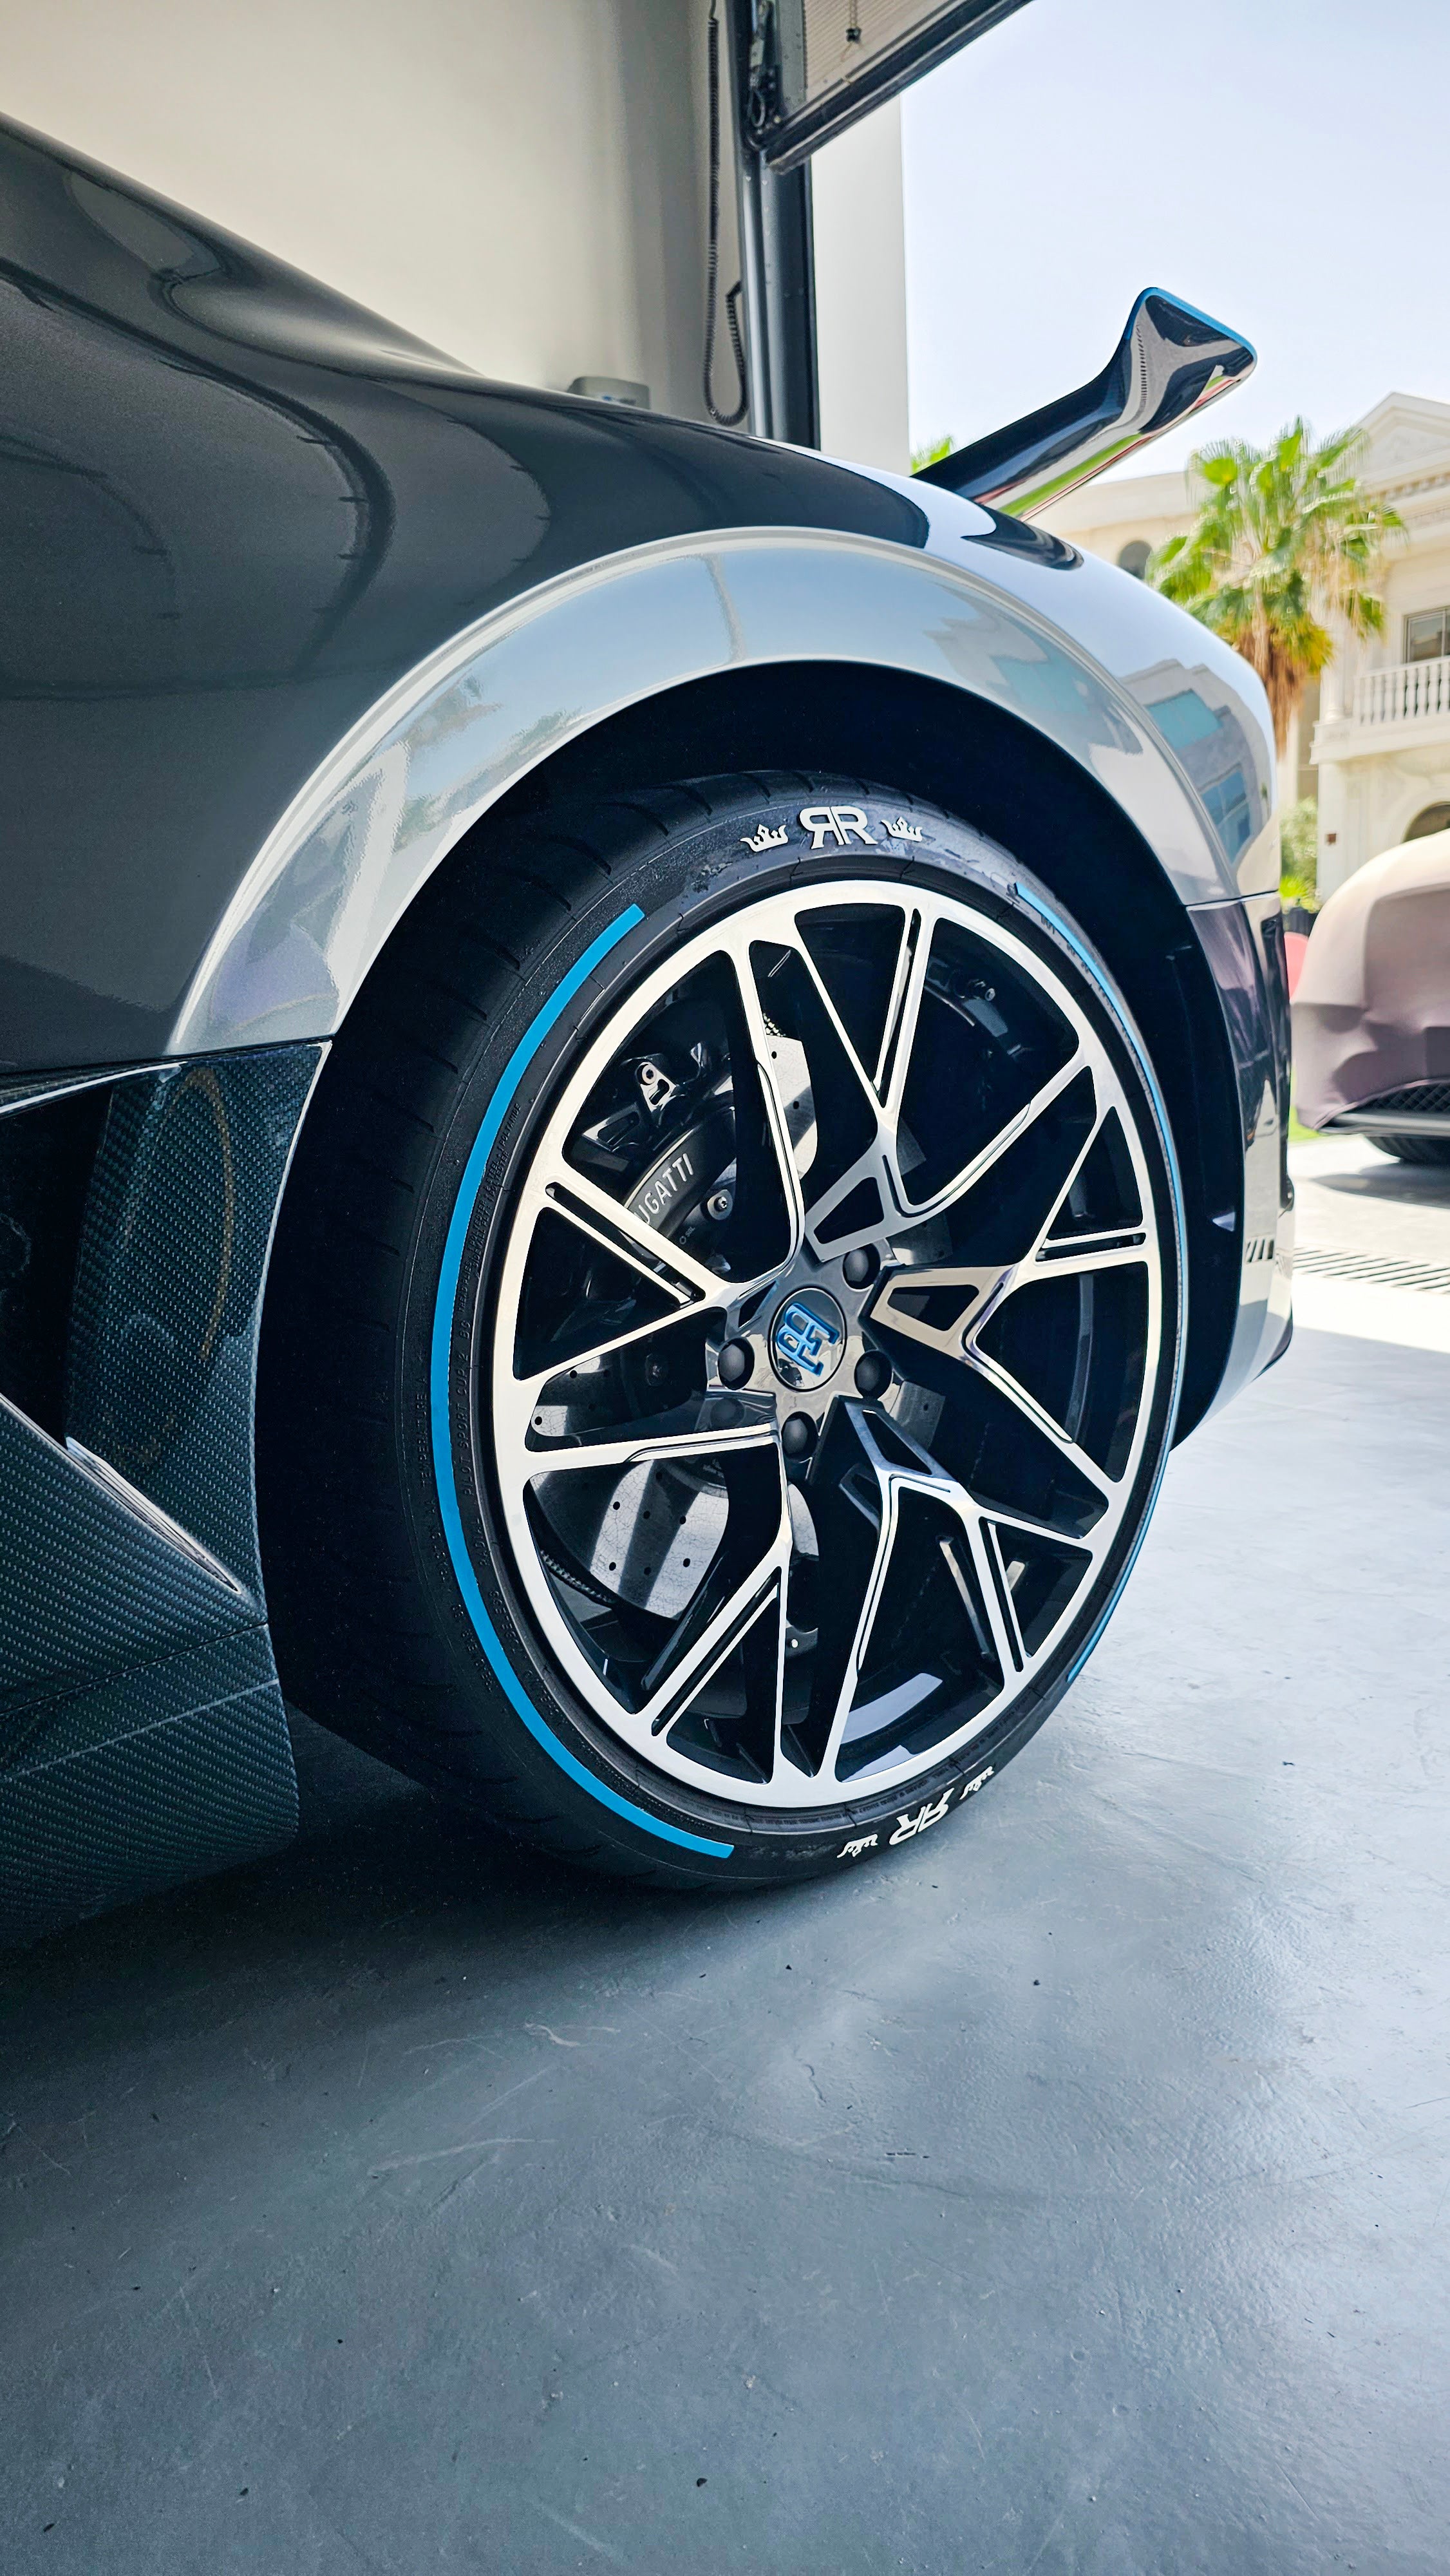 Kundenspezifische Design-Reifenaufkleber